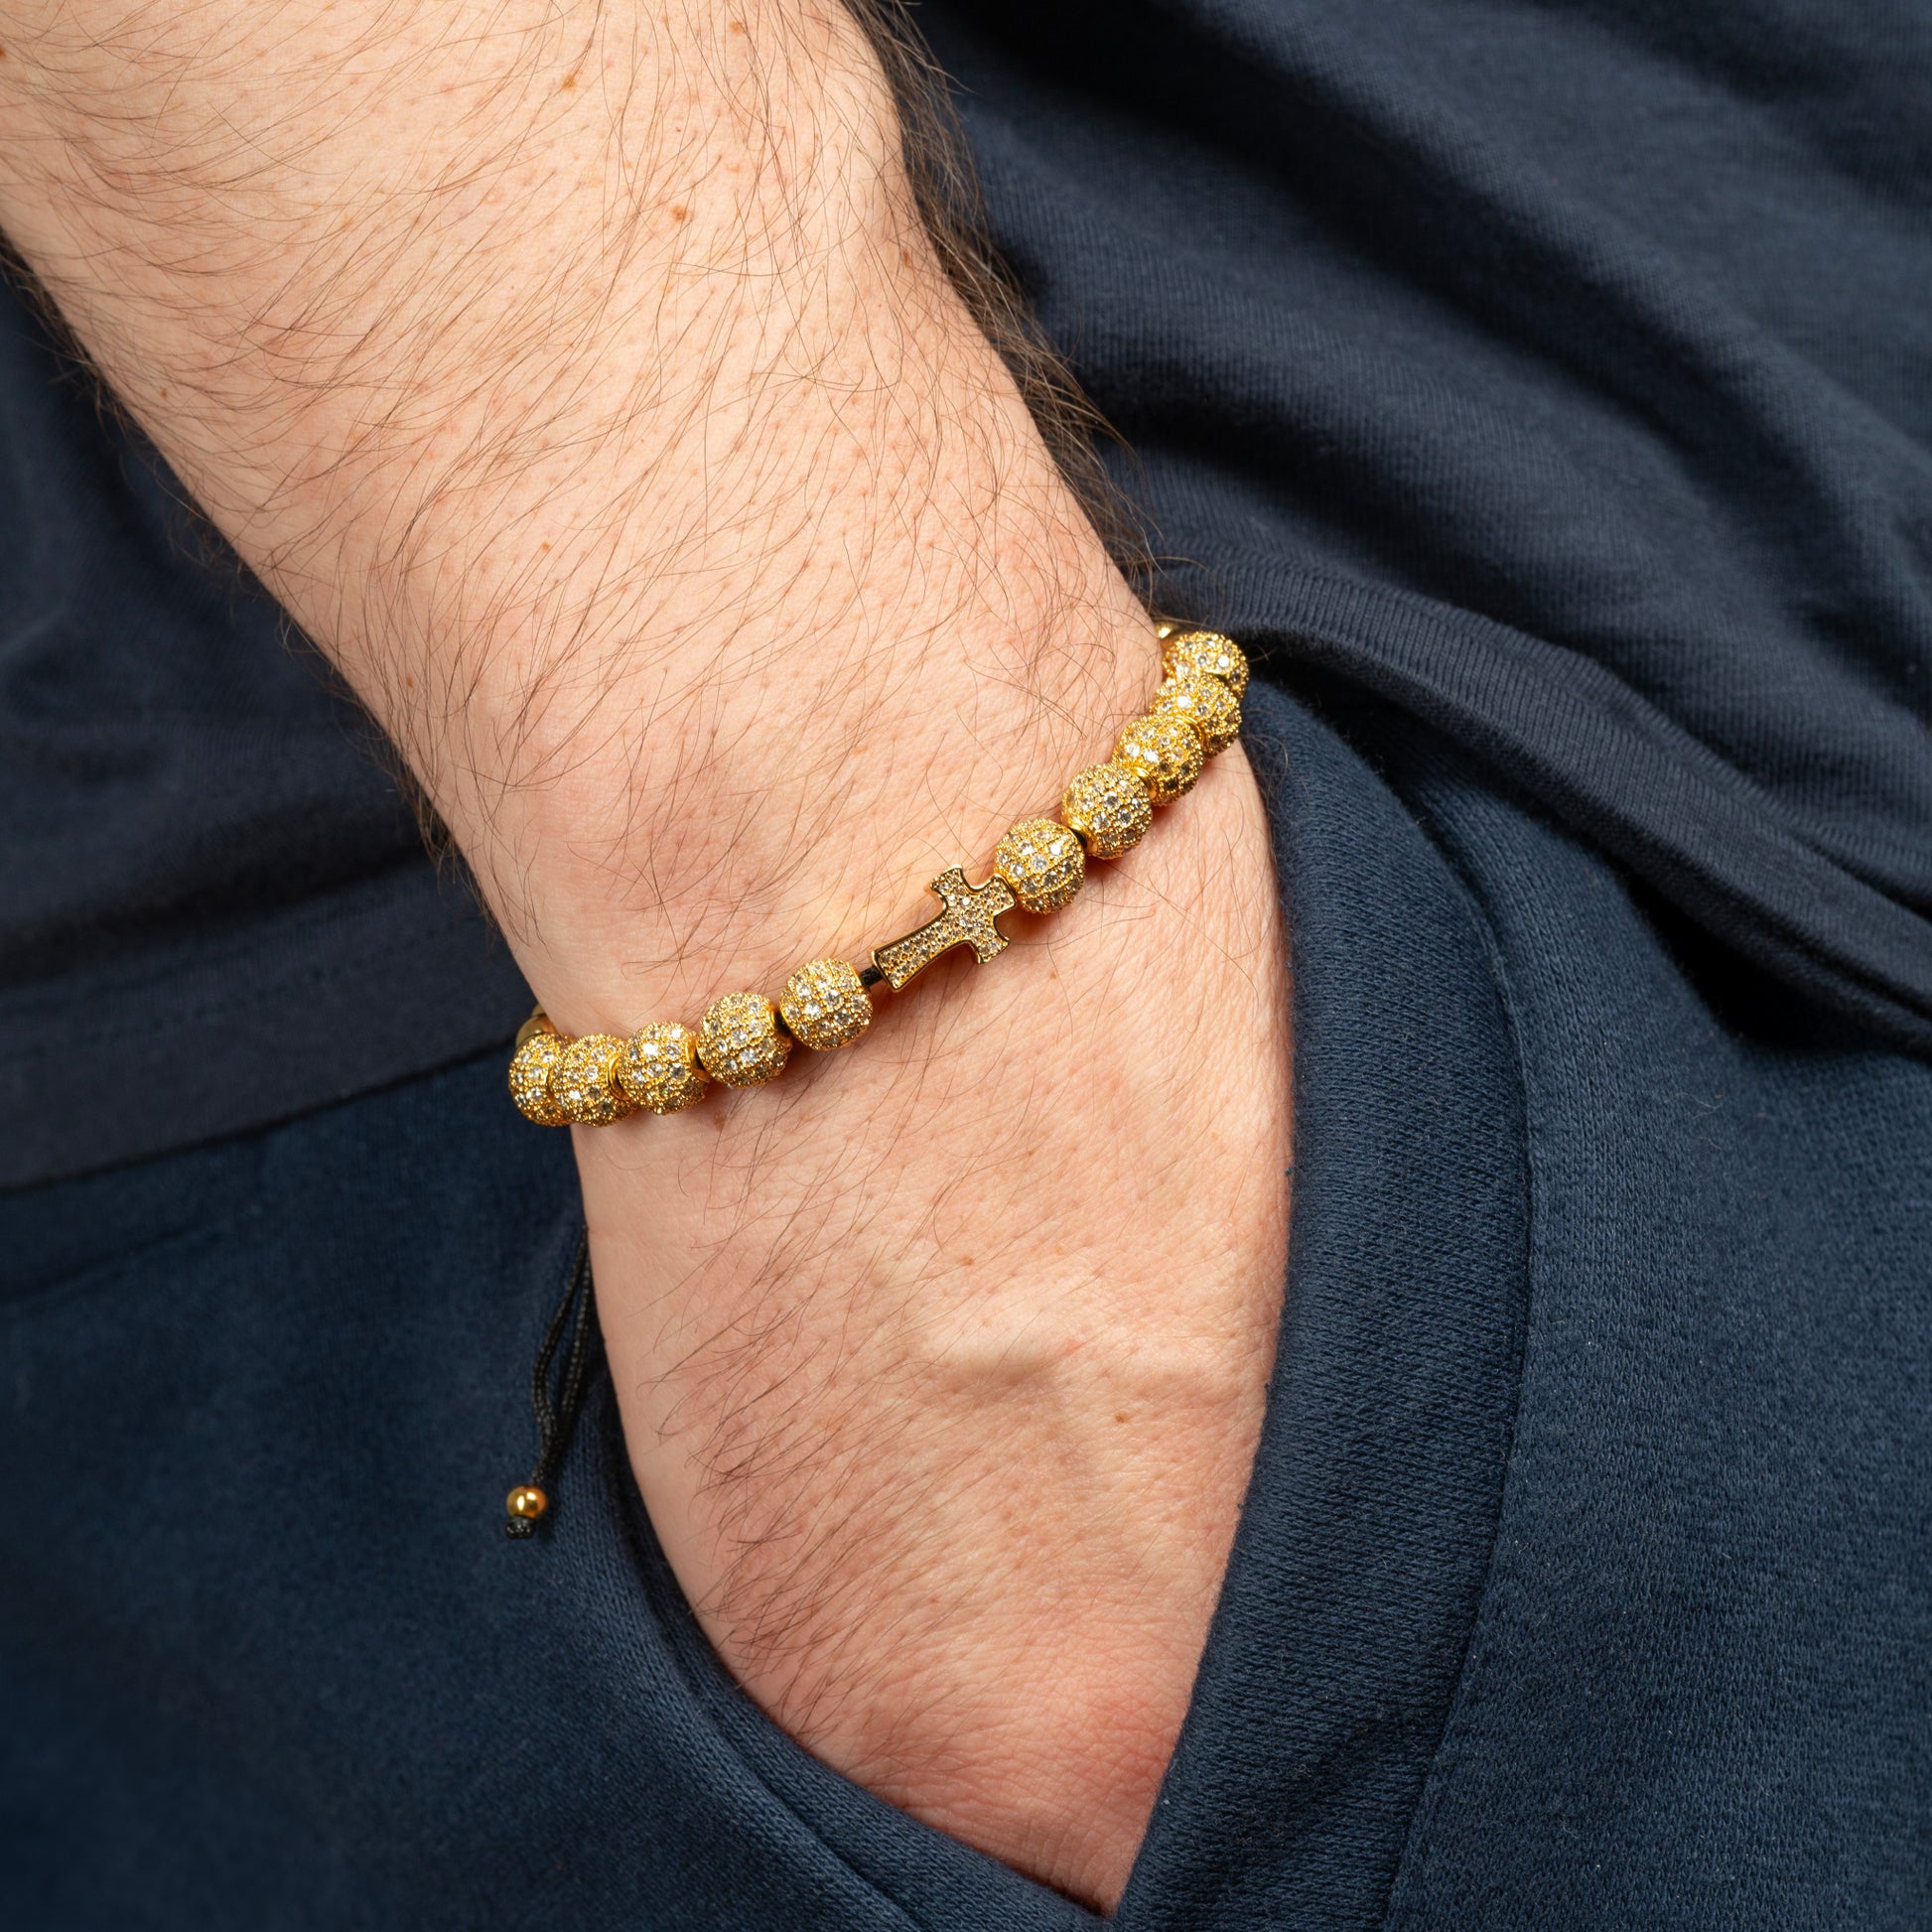 Model wearing Royal Cross Bracelet in Gold on his wrist.